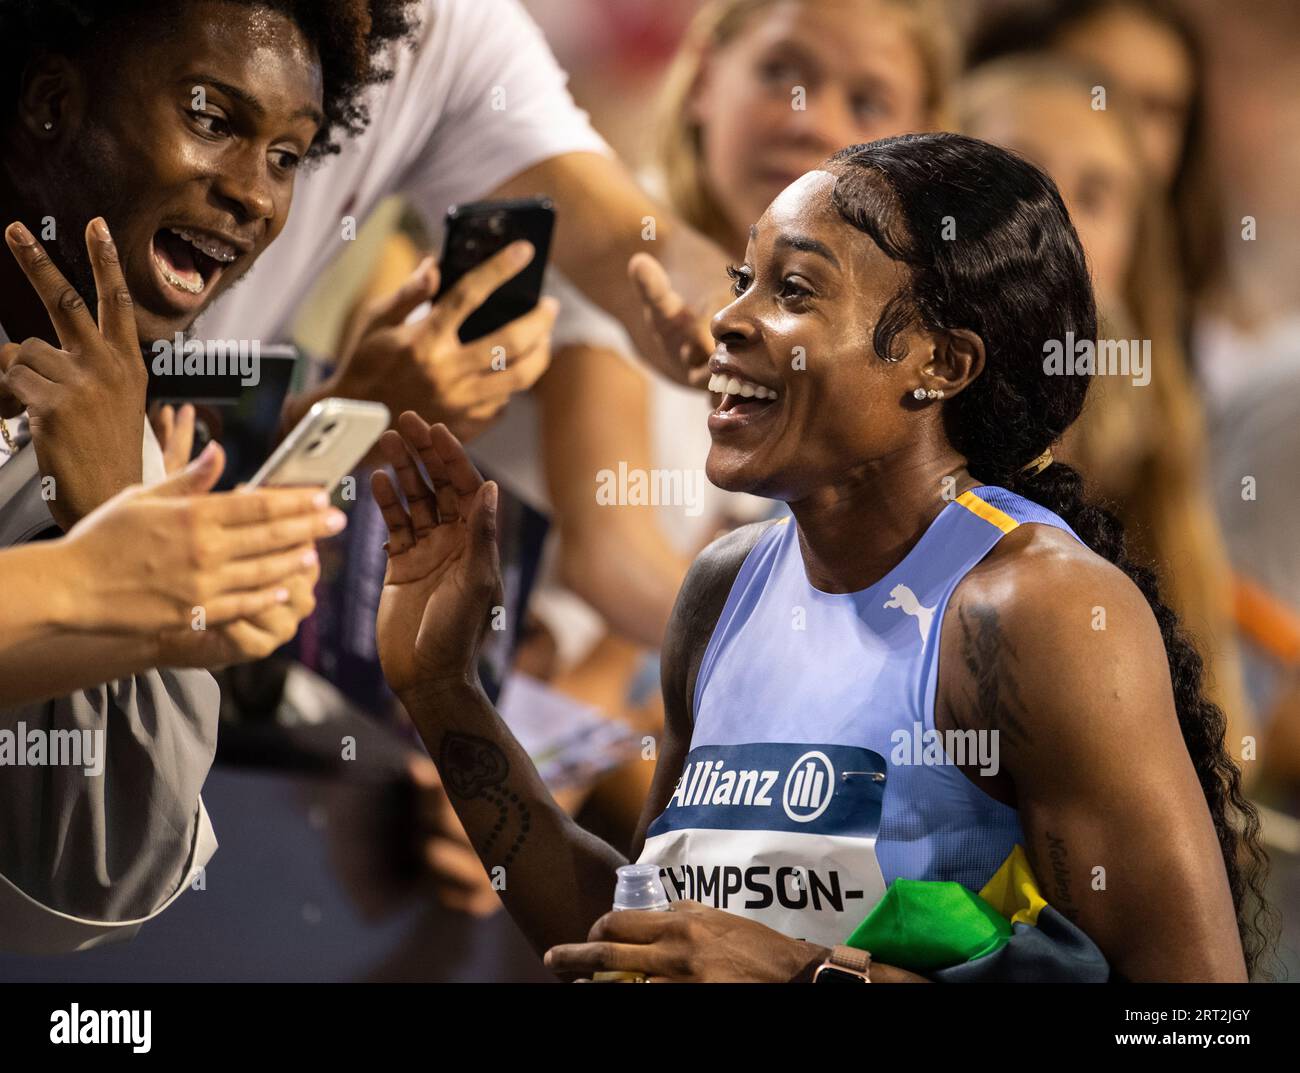 Elaine Thompson-Herah, de Jamaïque, signe des autographes pour les supporters après avoir concouru au 100m féminin à l’Allianz Memorial Van Damme au King Baudoui Banque D'Images